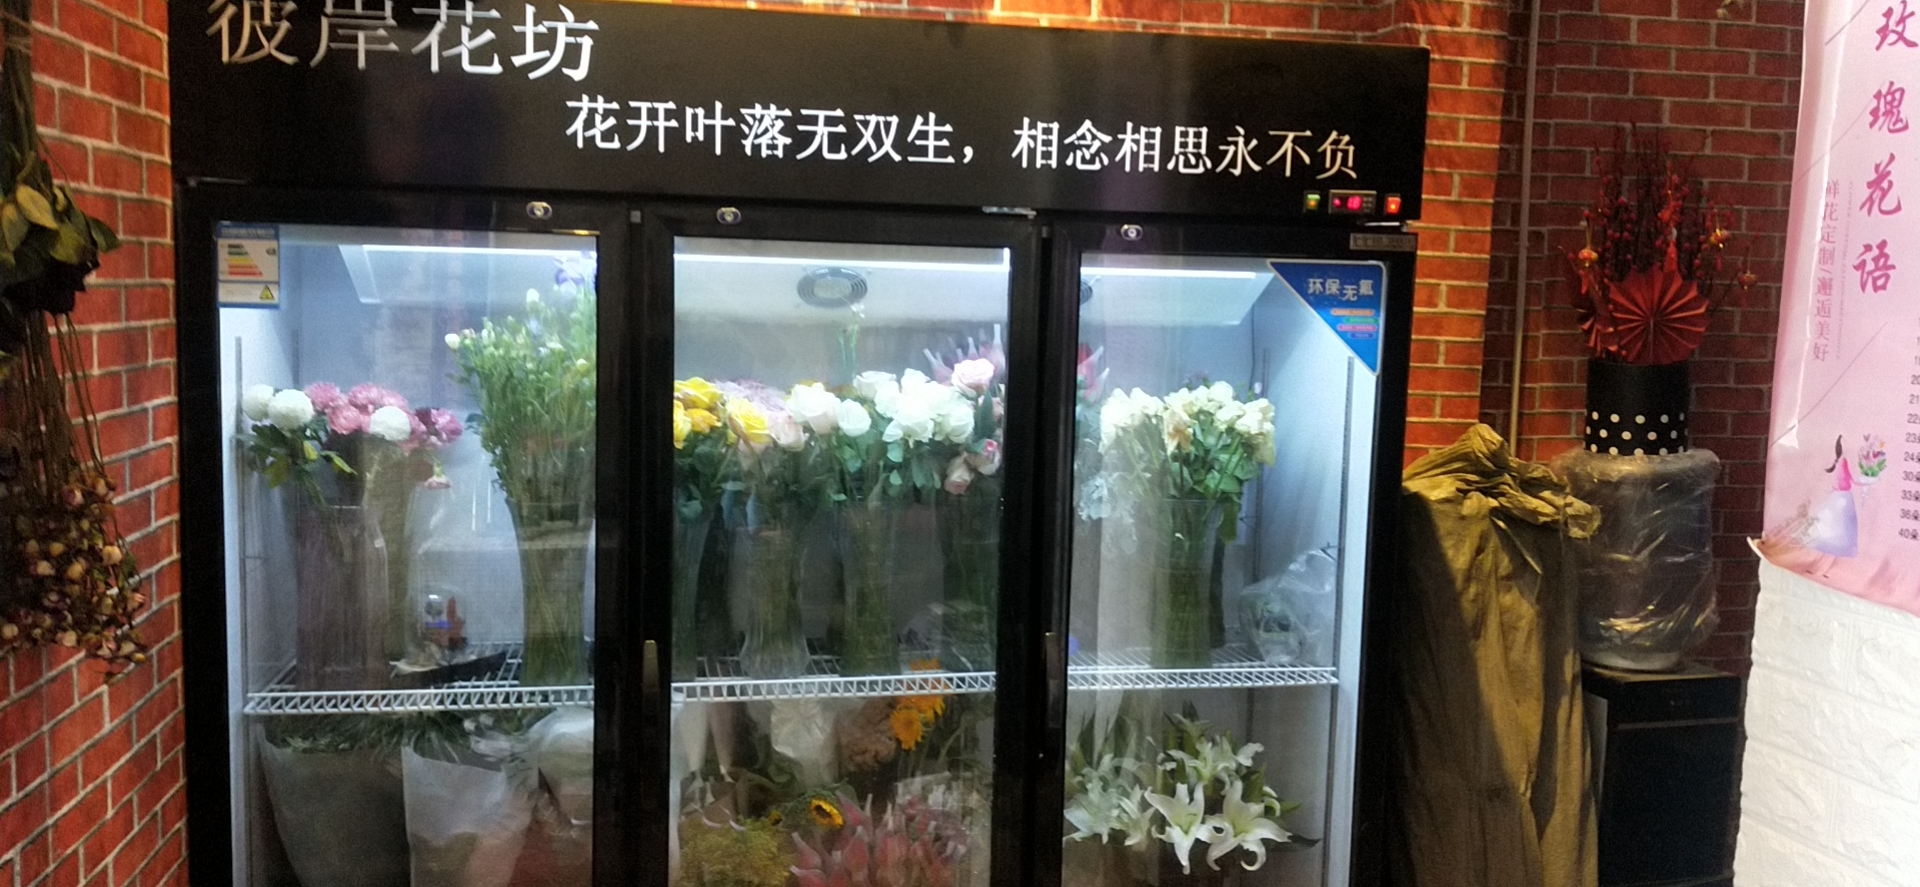 滨州济南鲜花柜价格单双三门花店鲜花保鲜风冷展柜花店玻璃冰柜植物柜陈列冷藏展示柜图片